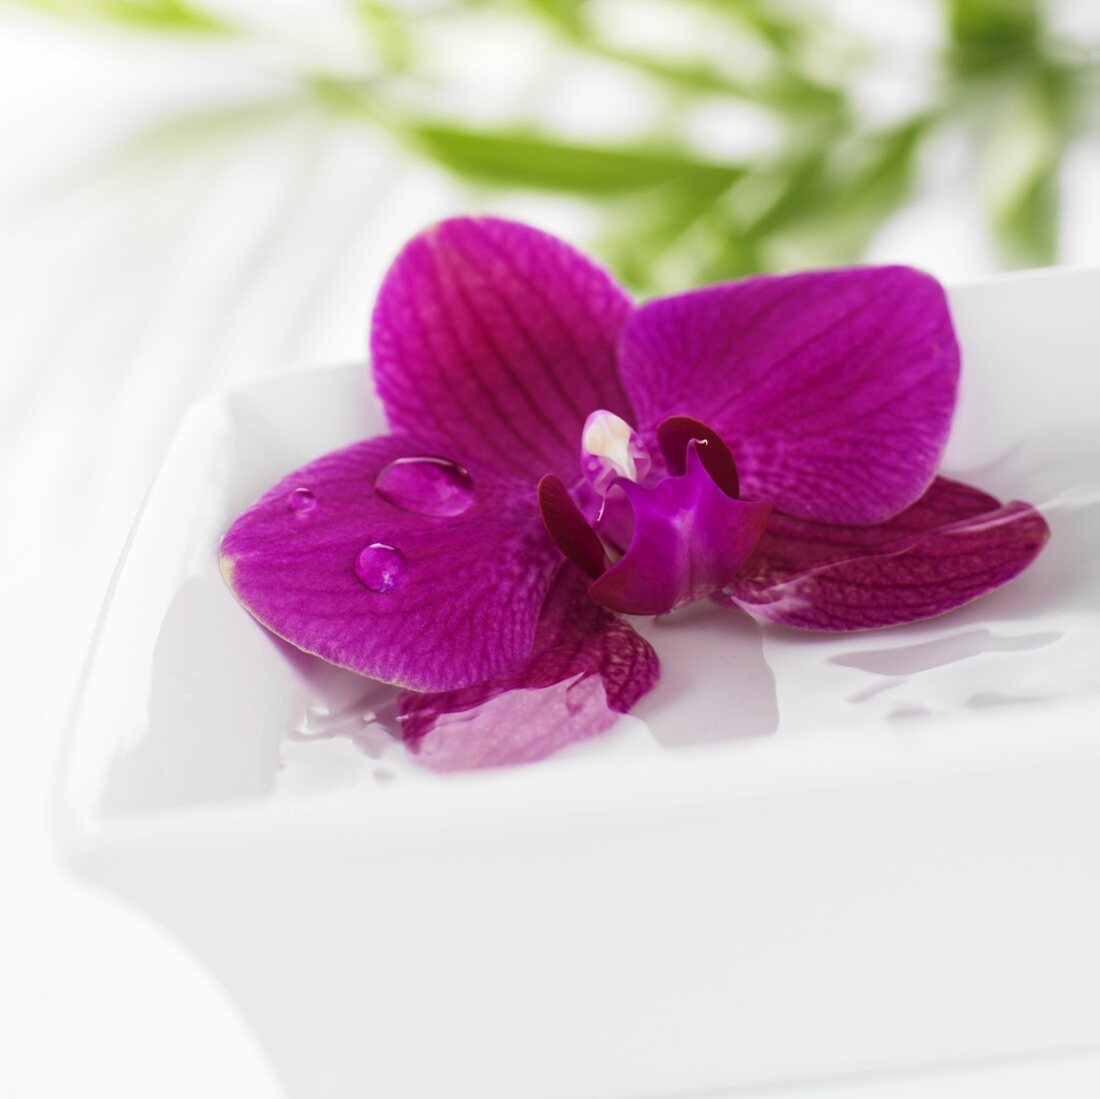 Violette Orchidee im Wasserschälchen